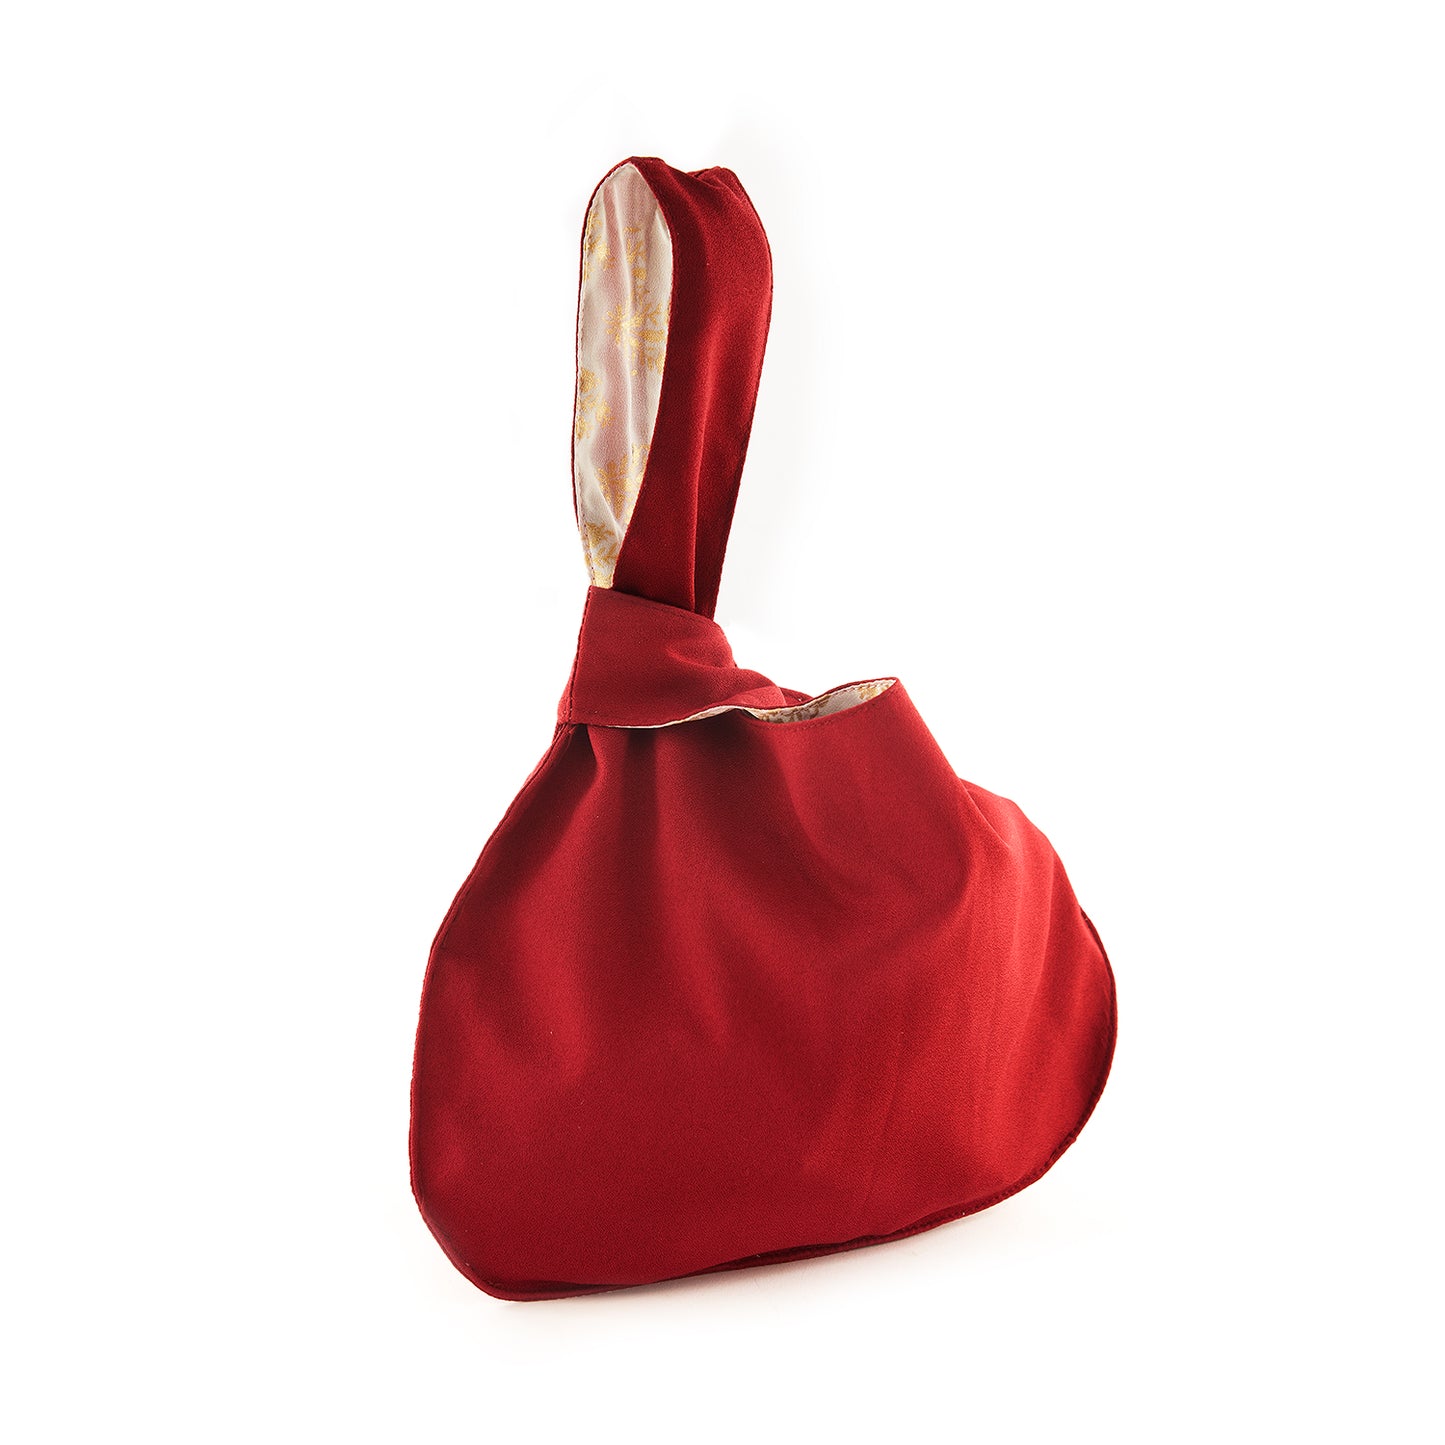 Rose Carmine - Japanese Knot Bag